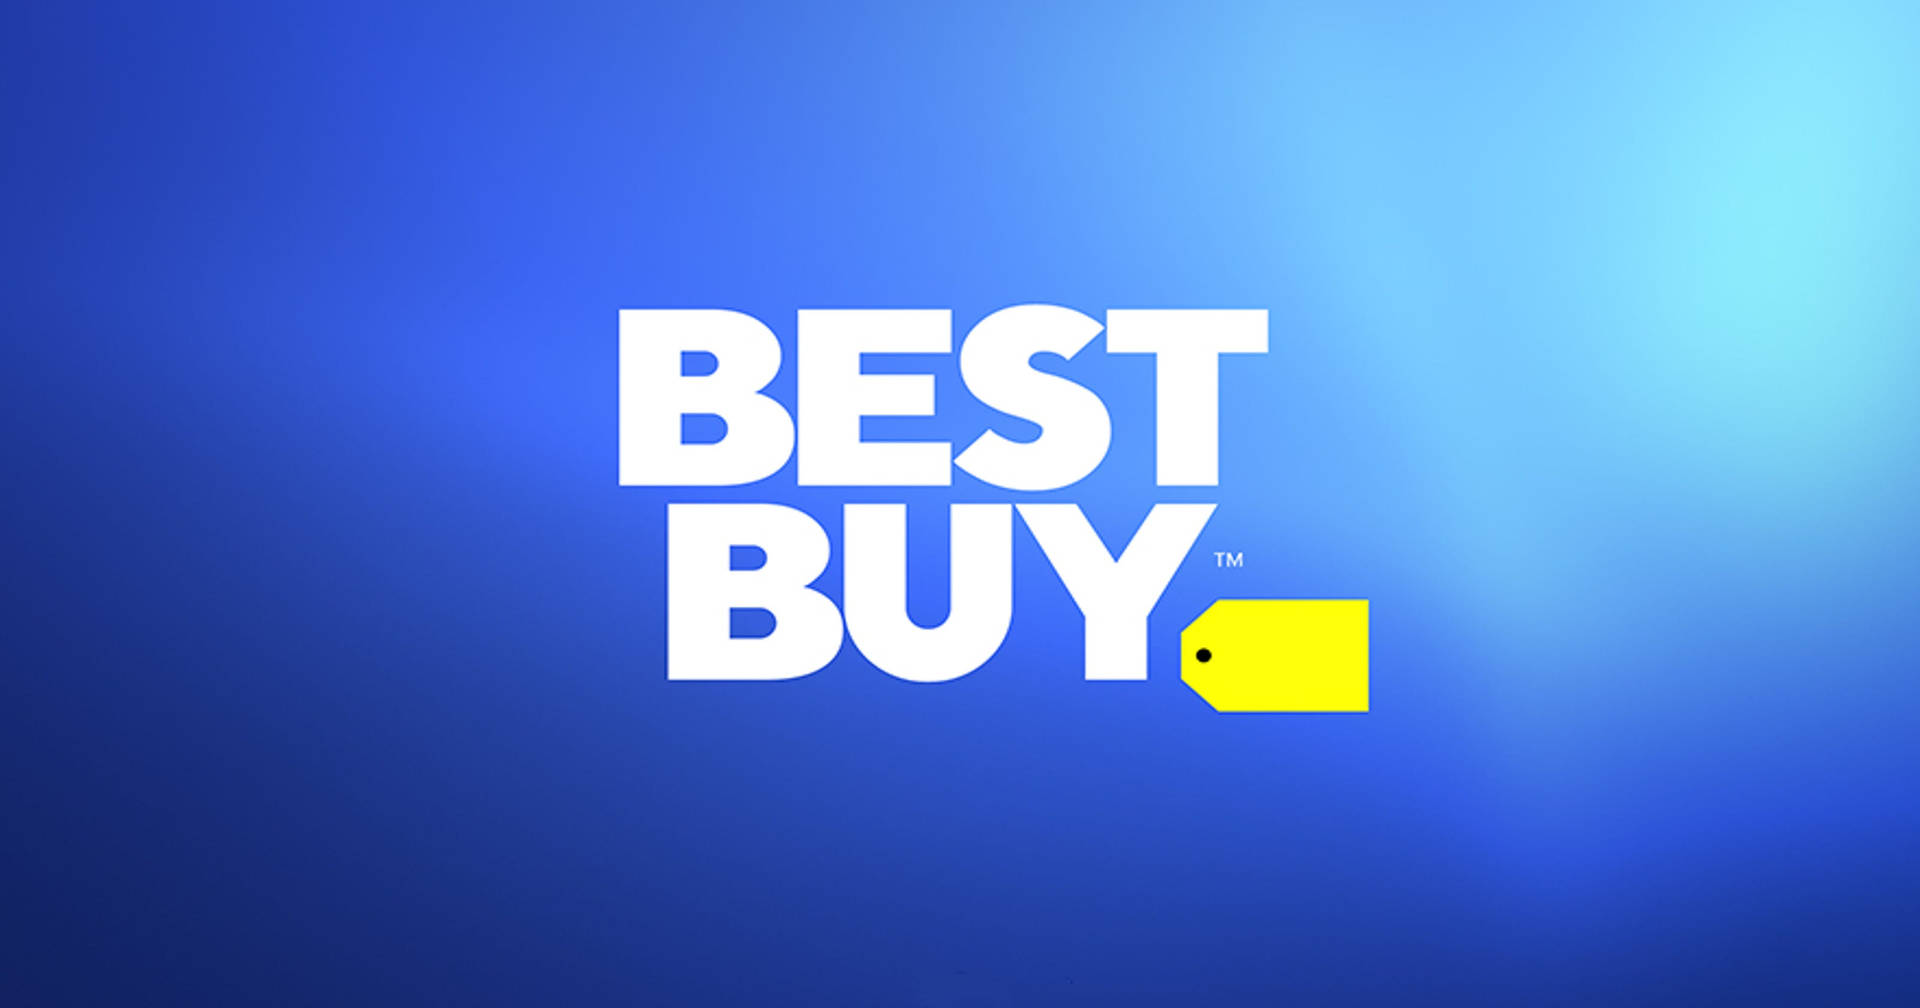 Best Buy Blue Brand Logo Wallpaper